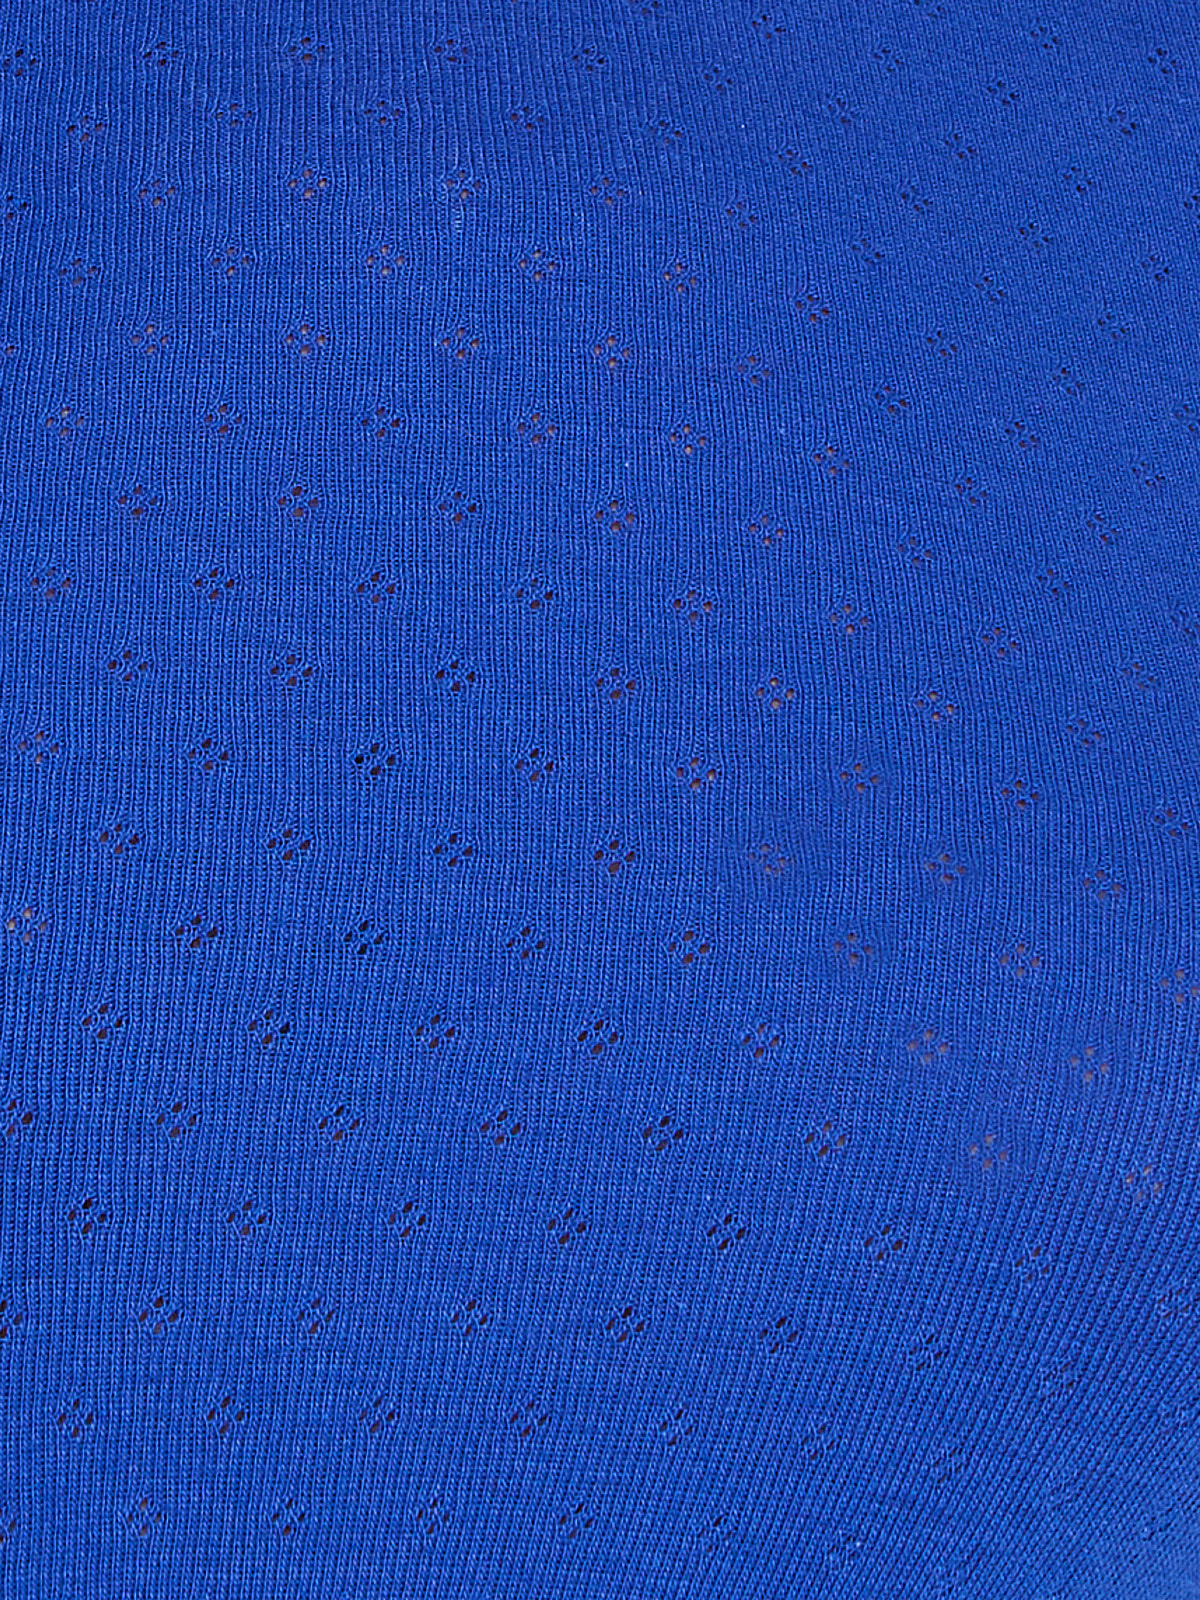 Savage X Cotton Jersey Hot Short in Blue | SAVAGE X FENTY